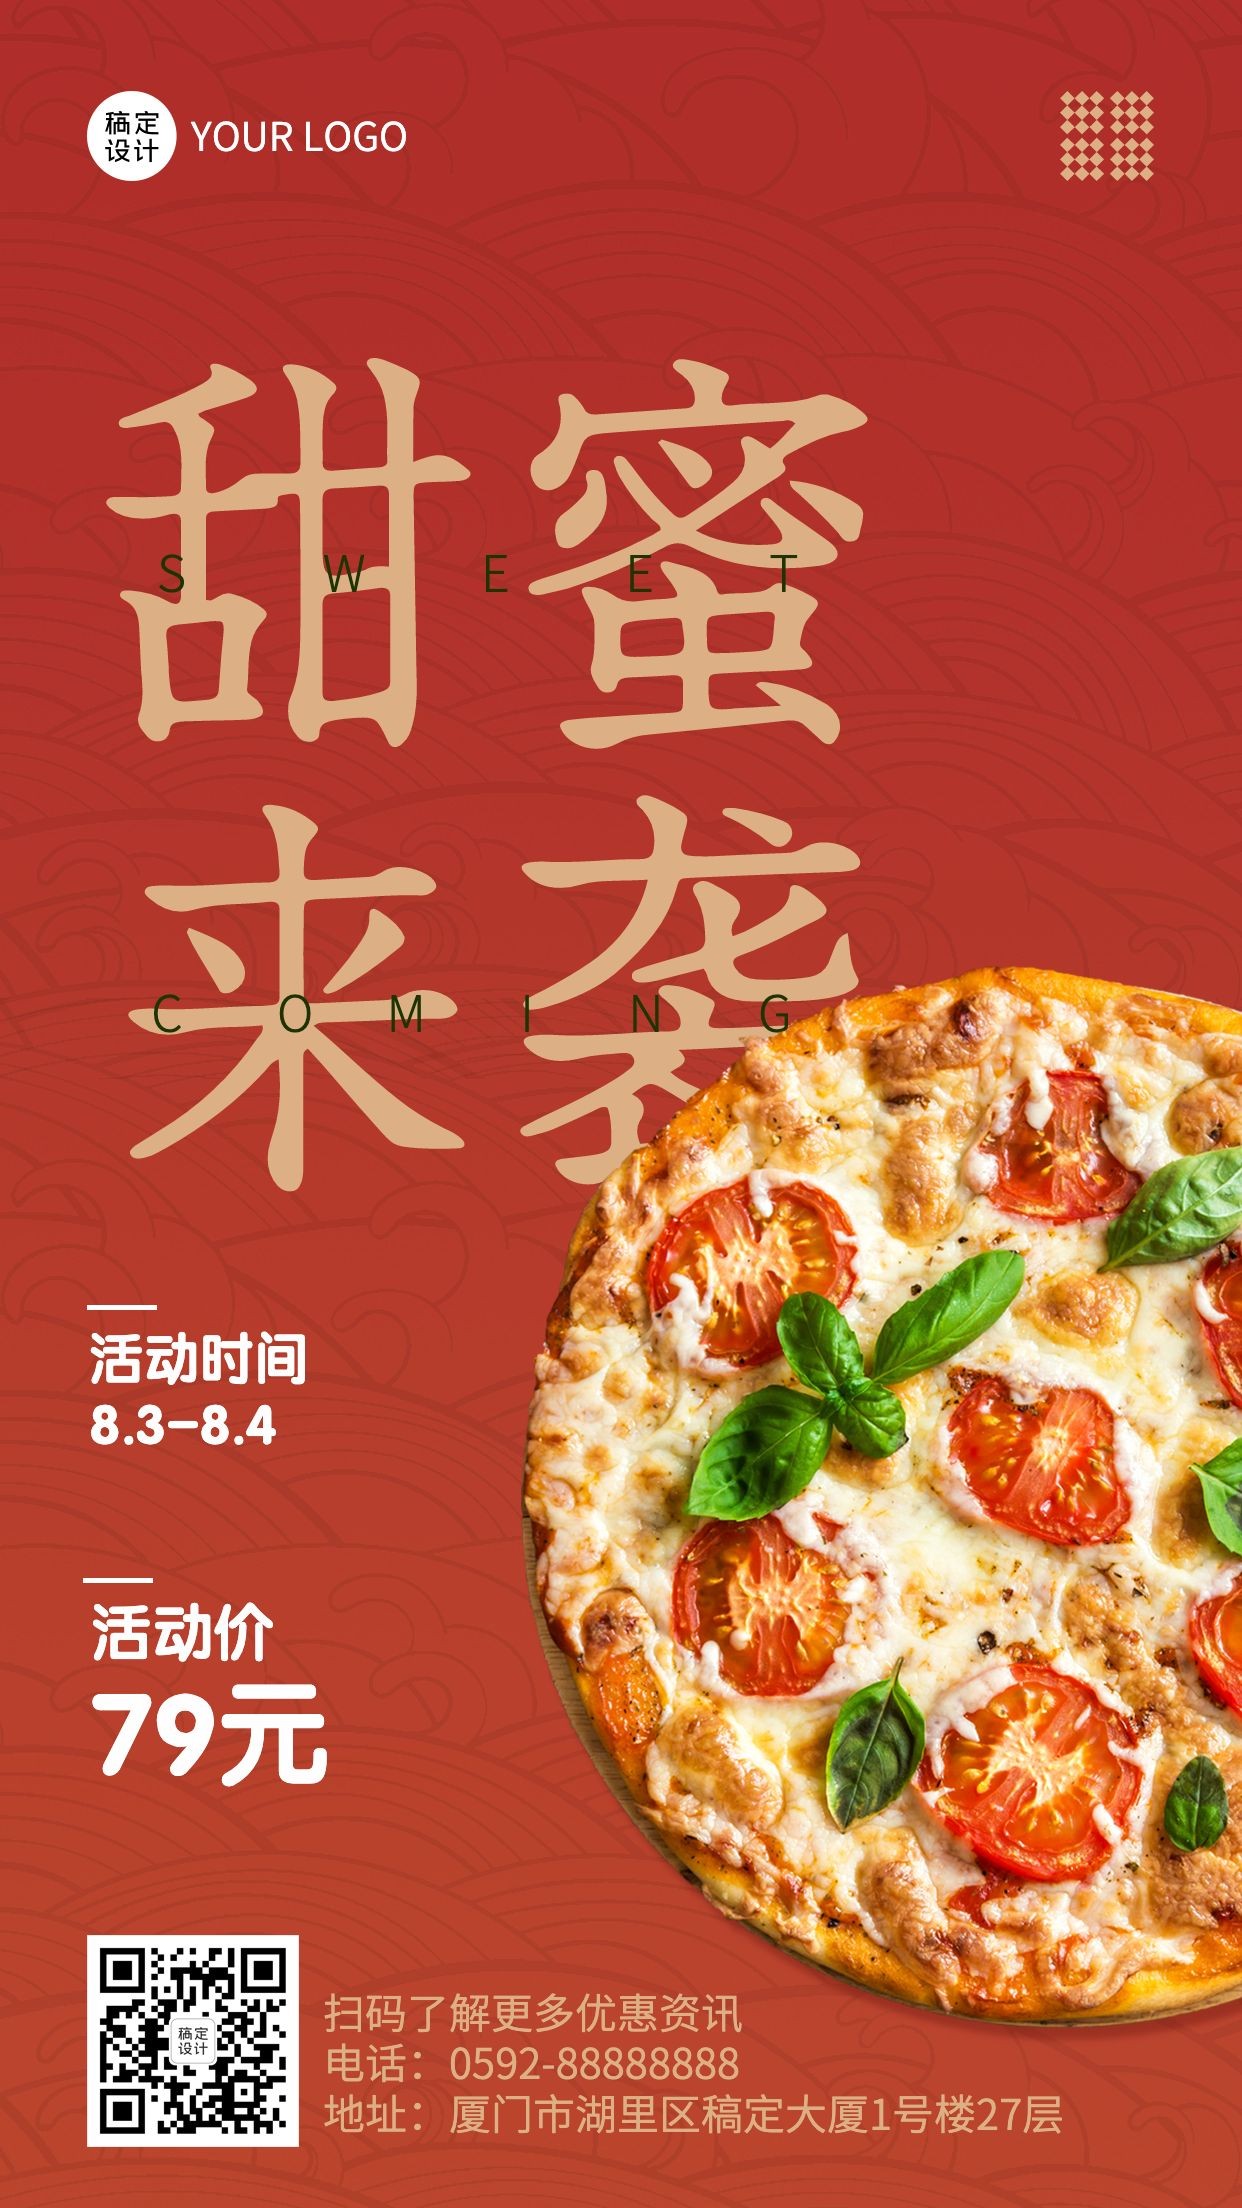 西餐轻食节日营销实景手机海报